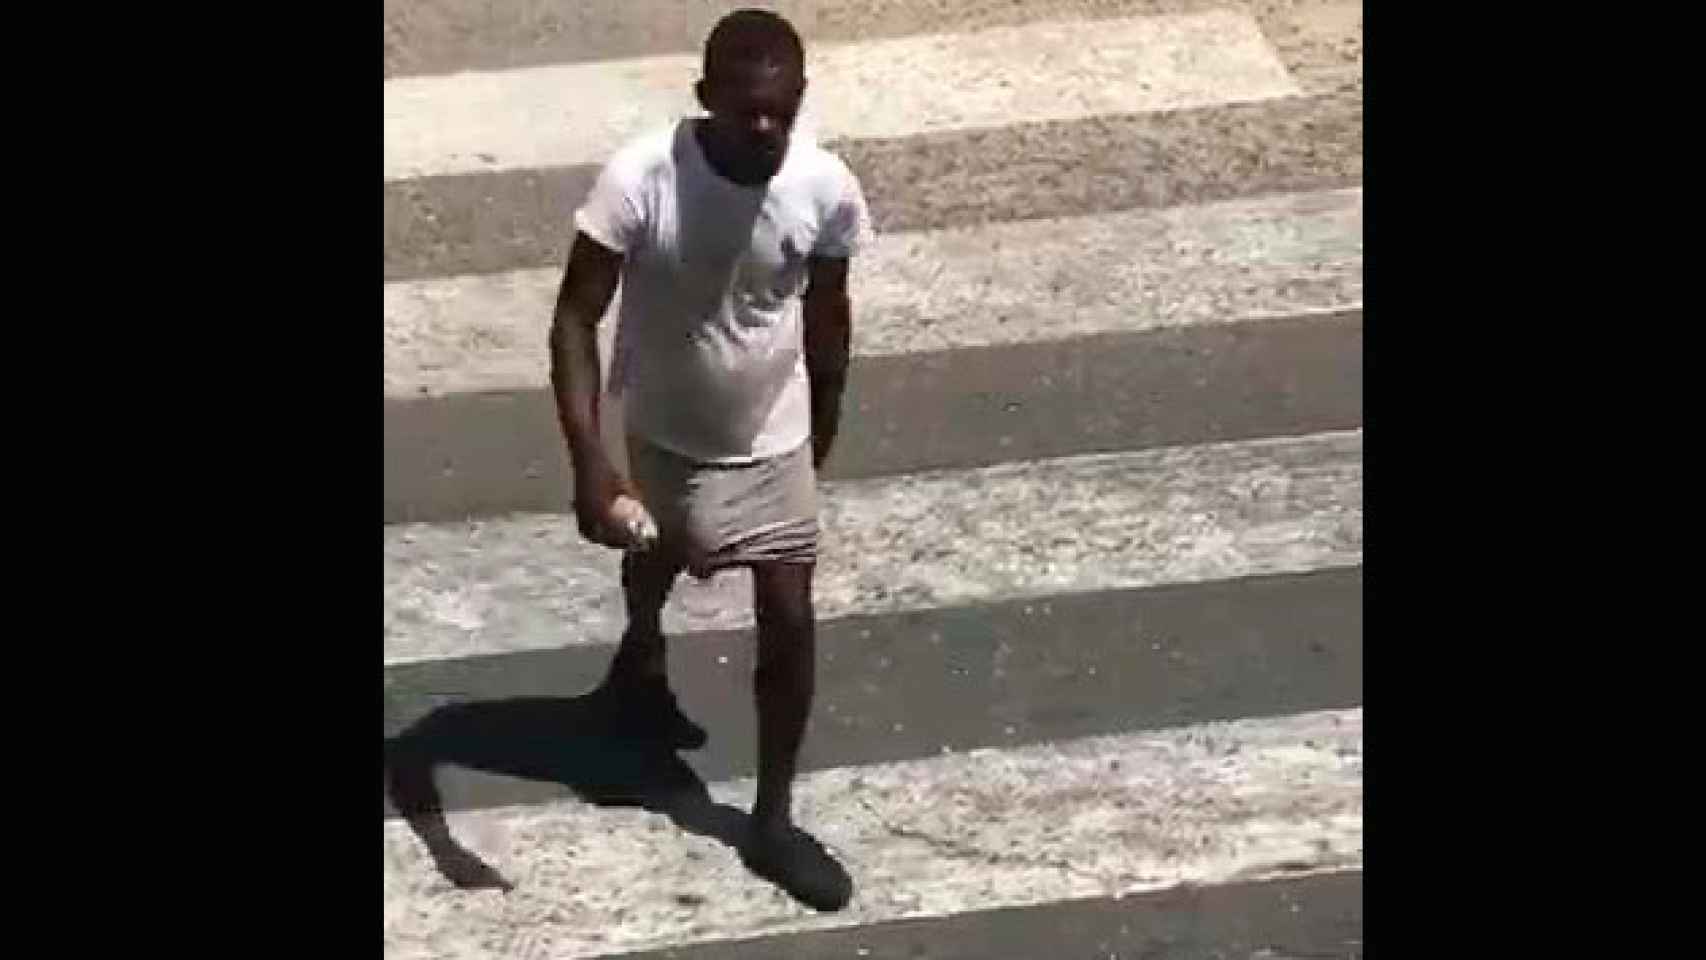 El vídeo grabado de incógnito que muestra al ciudadano con su pene enorme paseando por la calle / CG